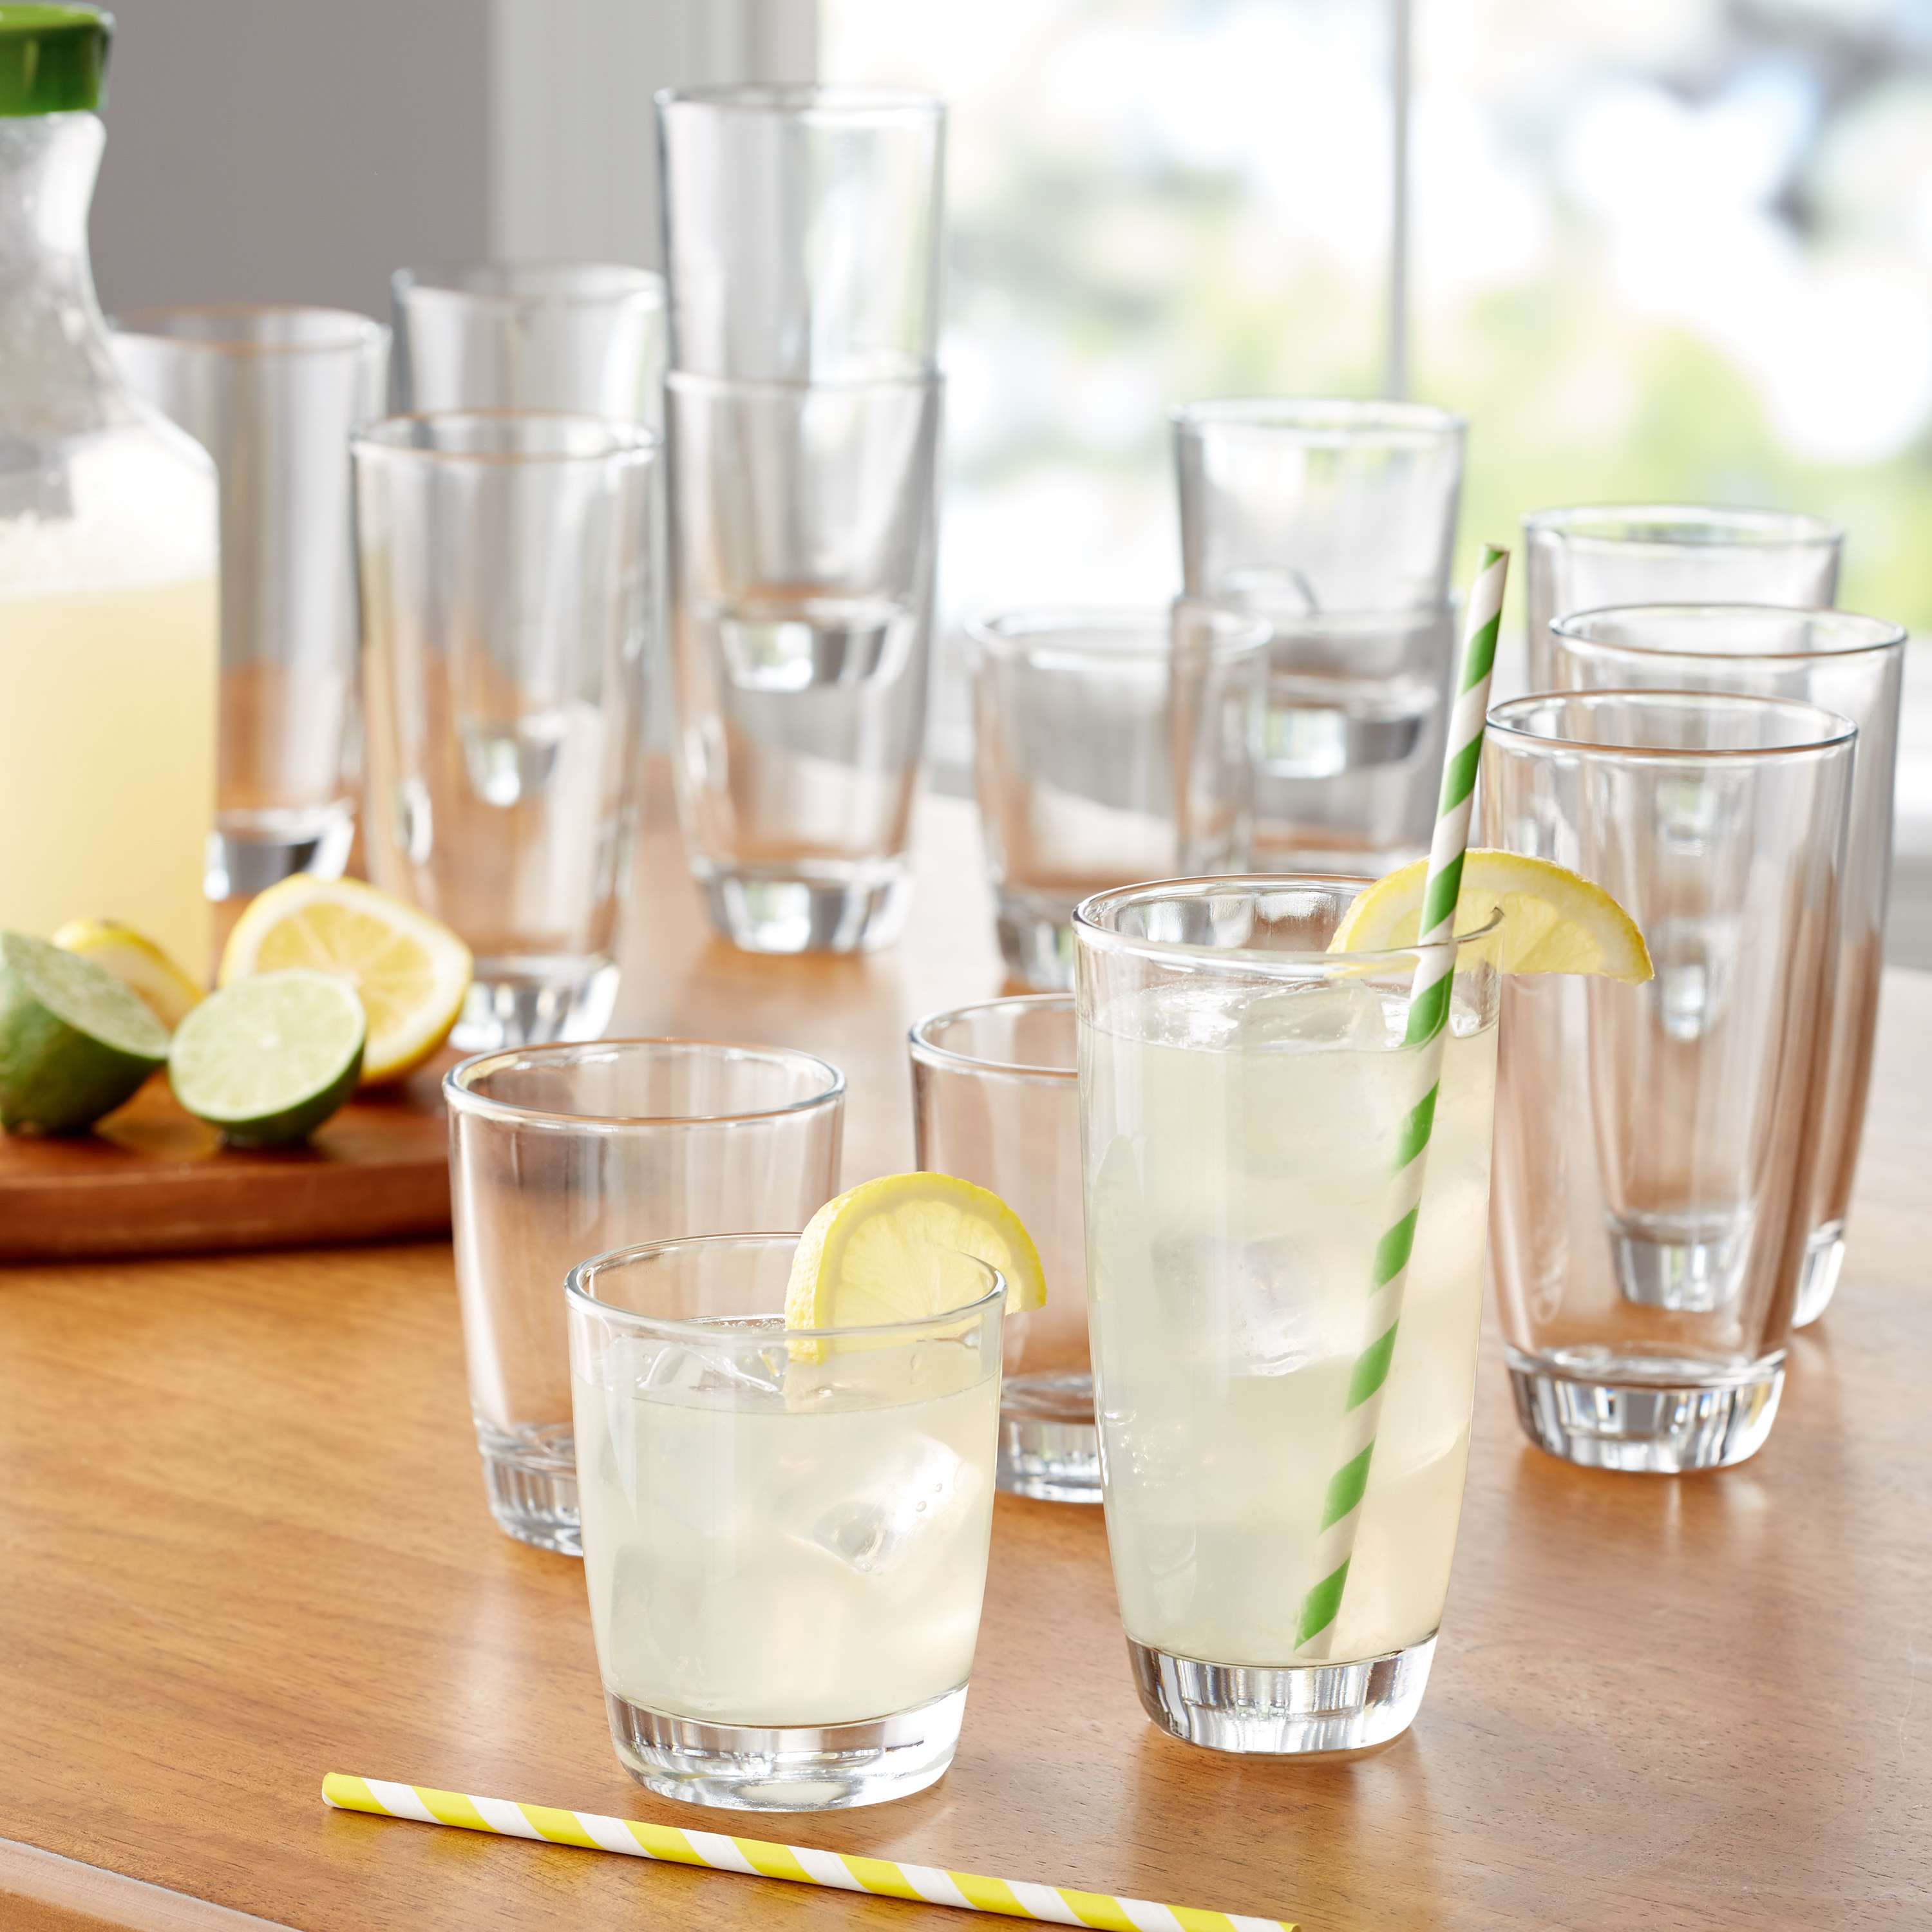 The sixteen-piece drinkware glass set